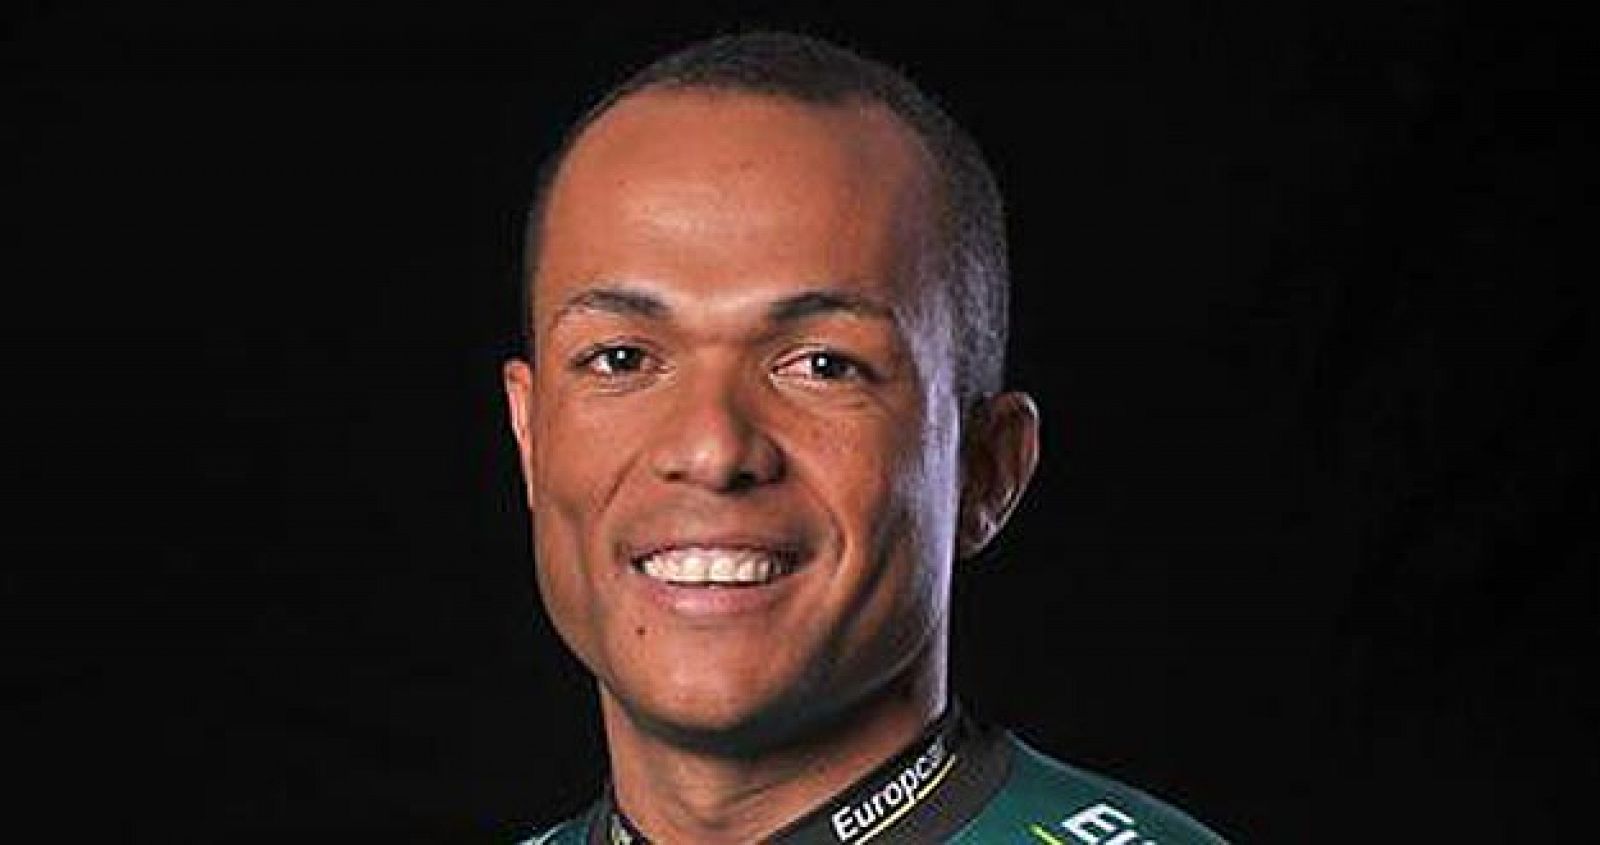 El ciclista caribeño del Team Europcar, Yohann Gène, es el primer corredor negro que participa en el Tour de Francia.